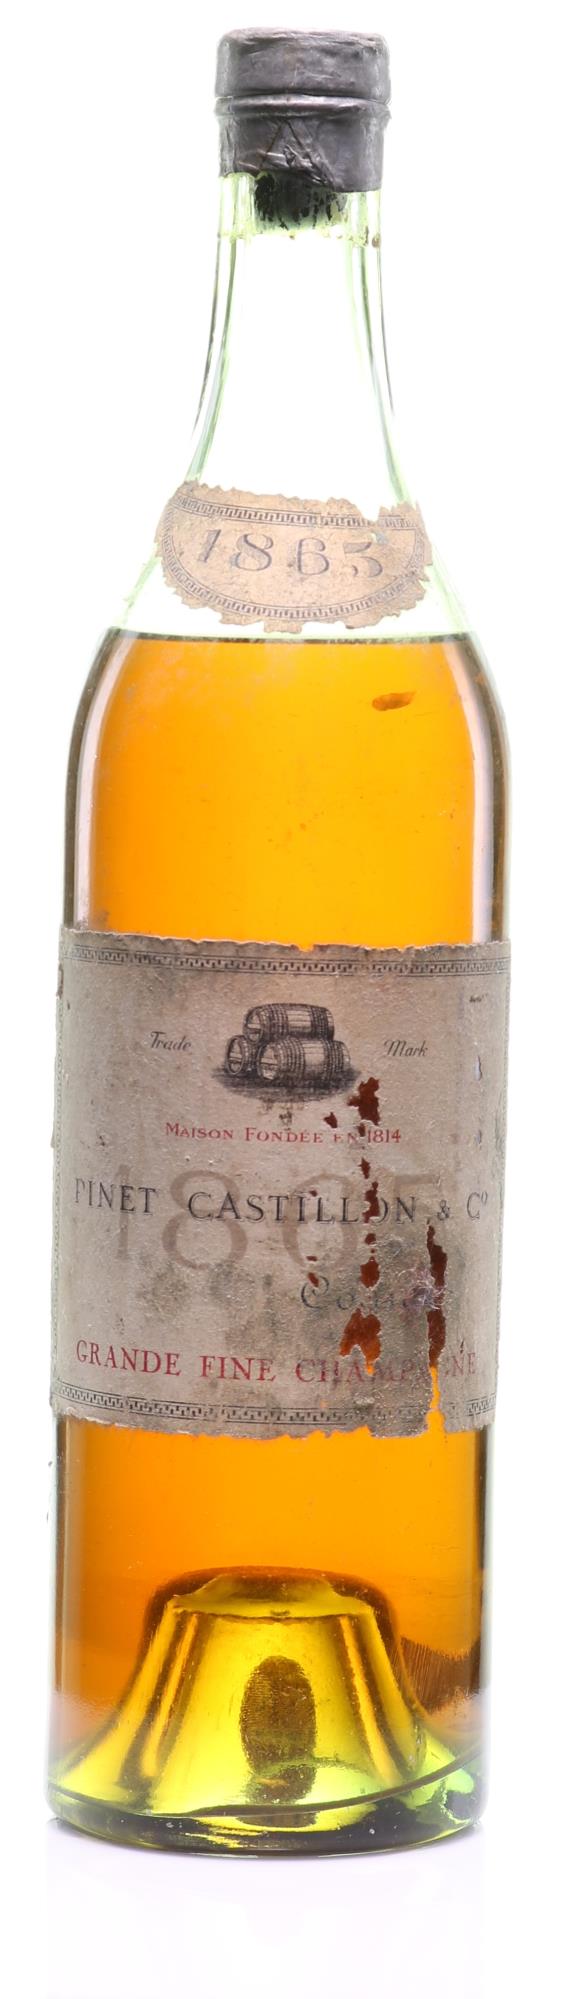 1865 Pinet Castillon & Co. Grande Fine Champagne Cognac Acquit Jaune d'Or - Rue Pinard